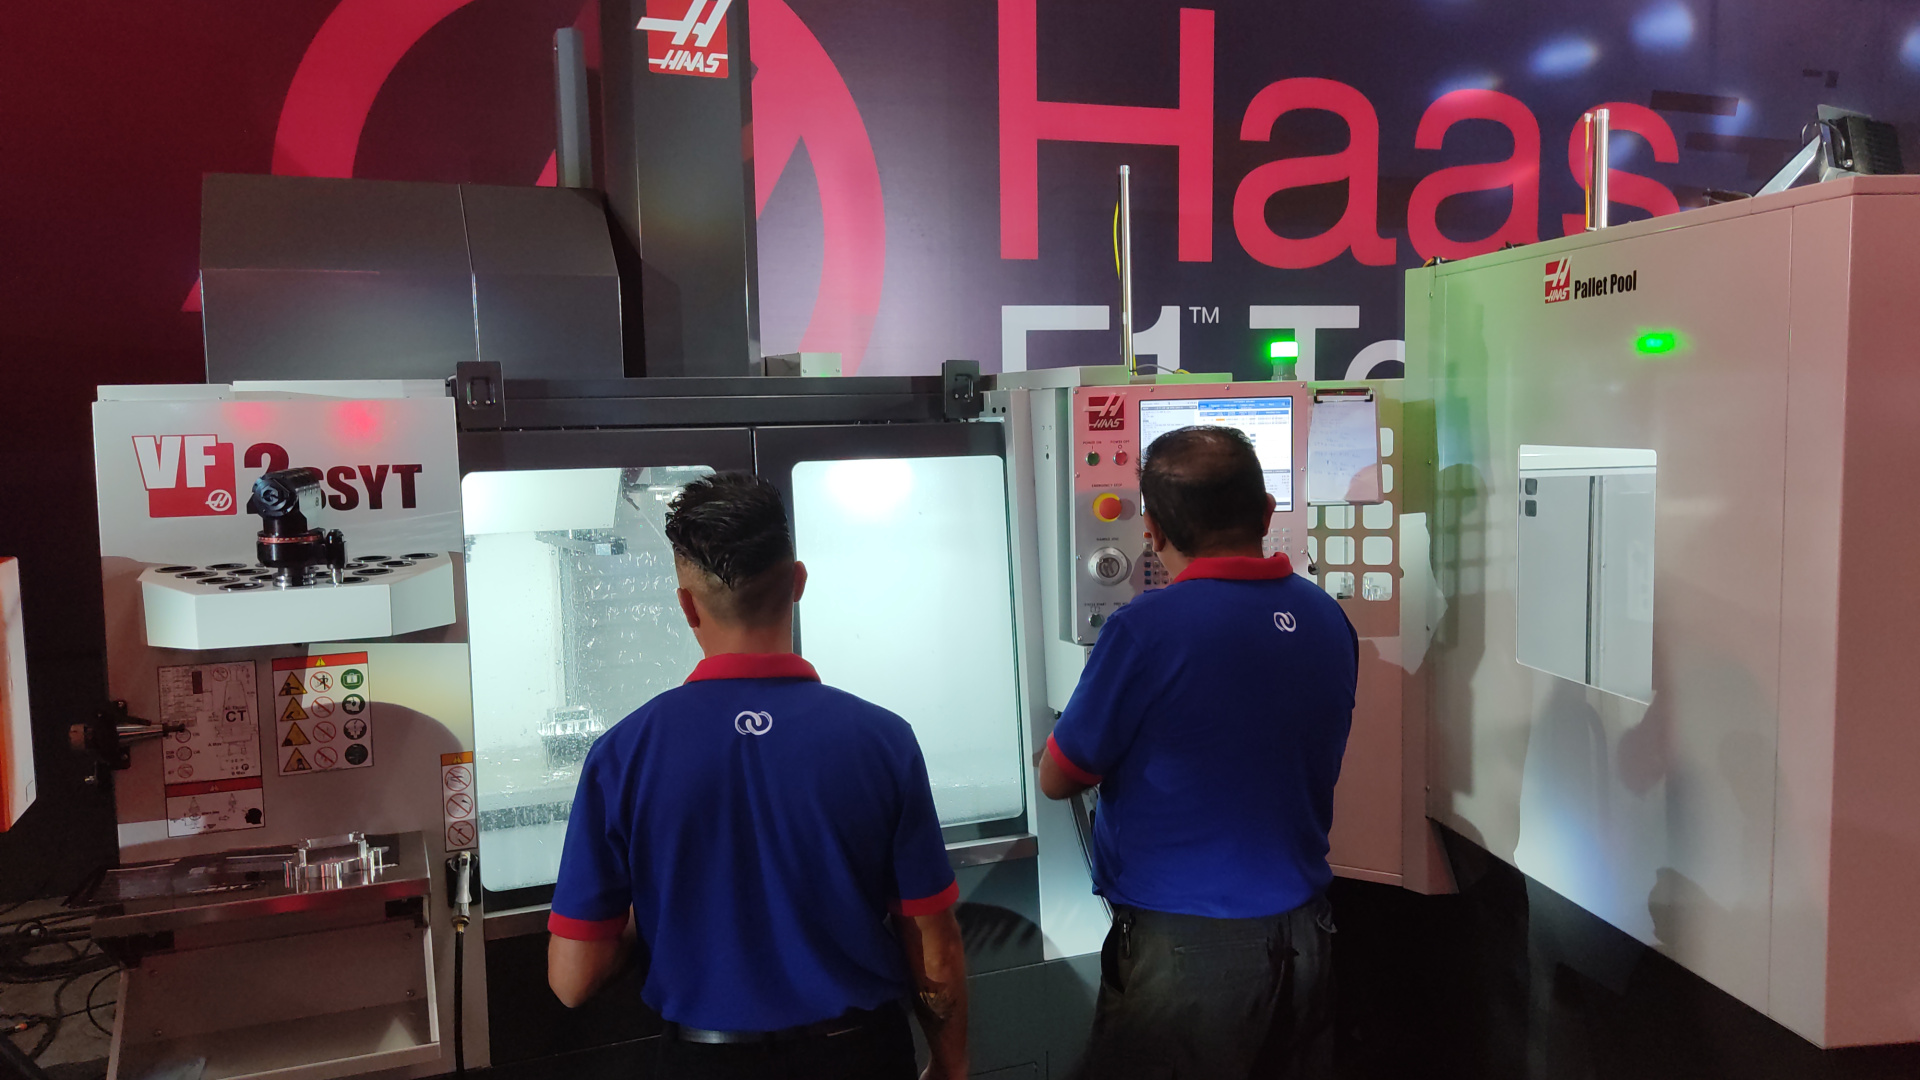 En el evento se presentaron 8 máquinas Haas.